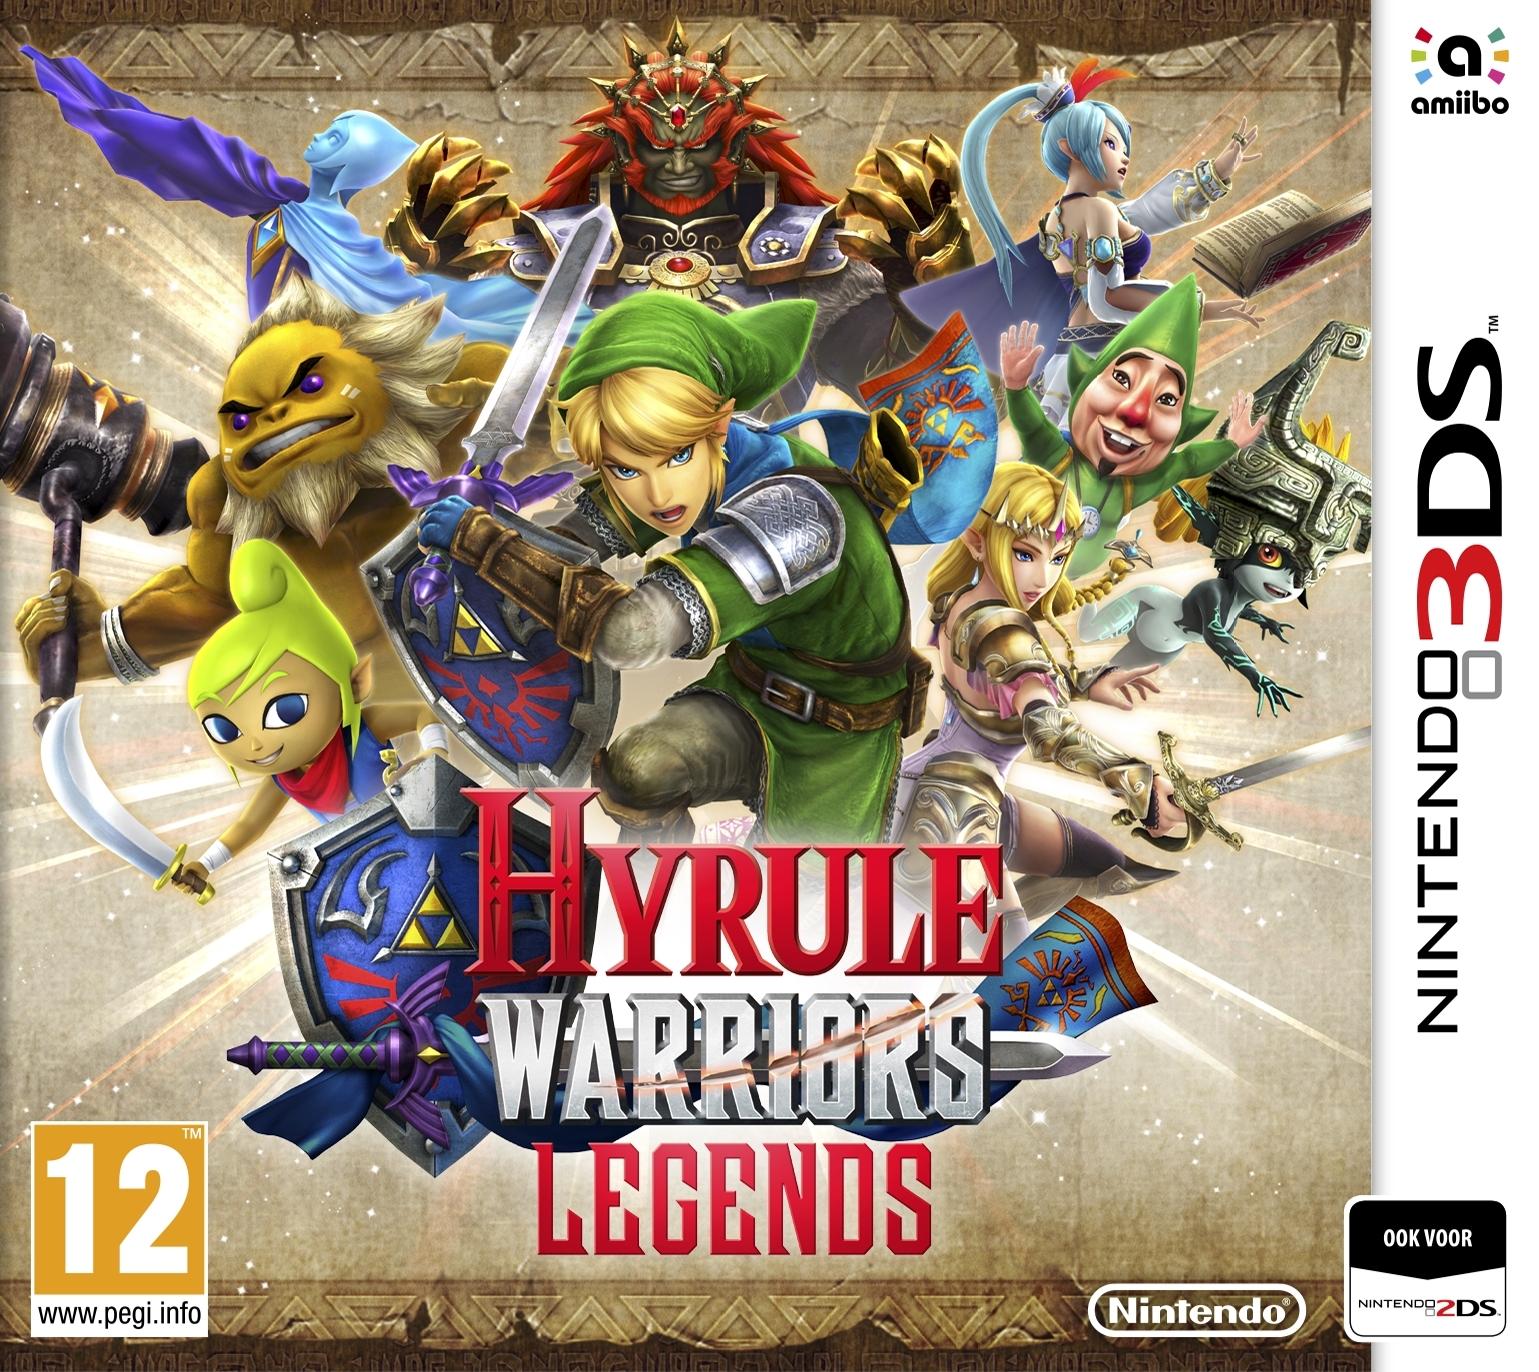 Hyrule Warriors: Legends (3DS), Omega Force, Team Ninja